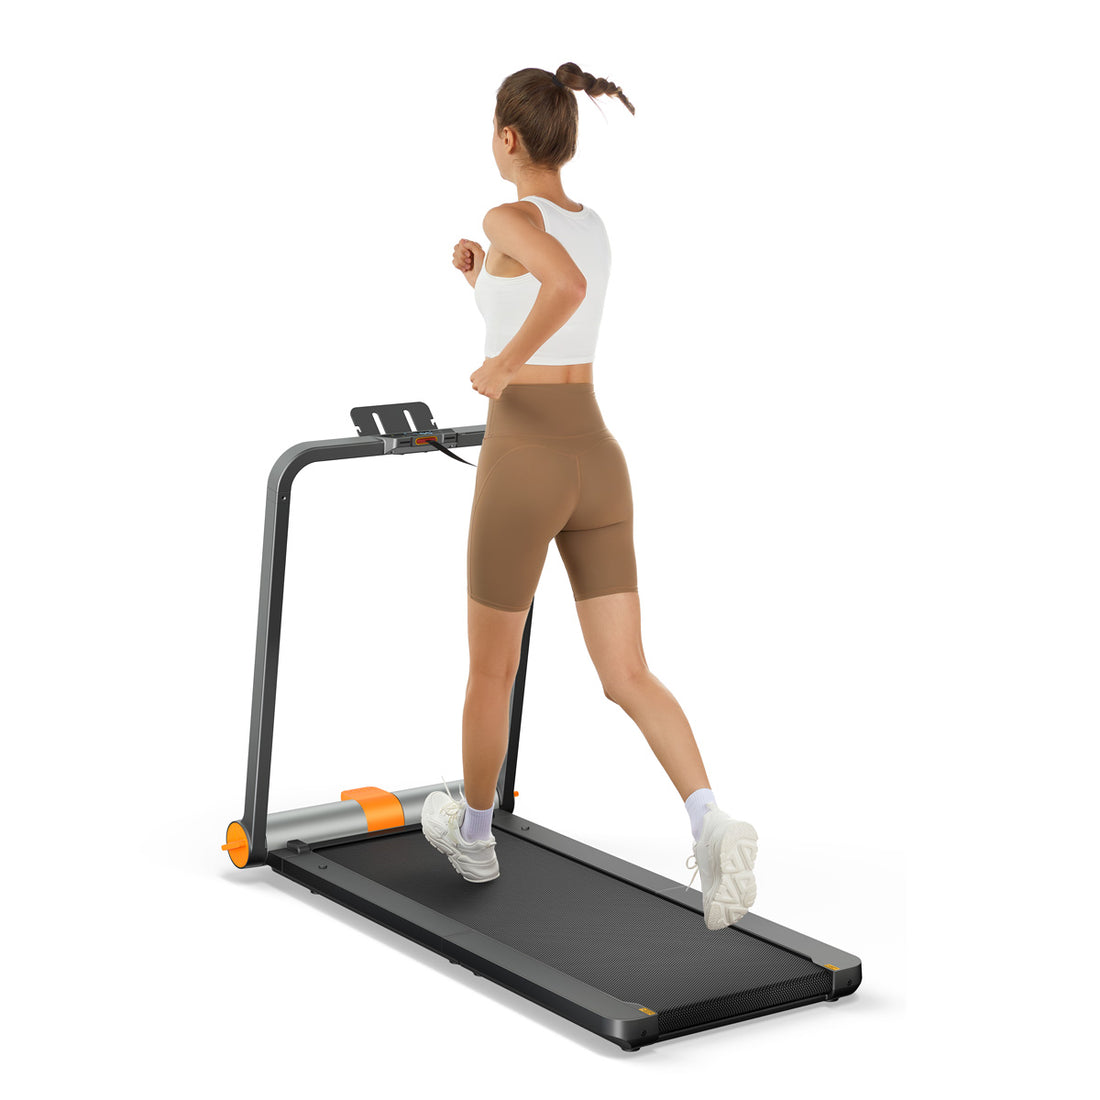 ⚡WalkingPad MC11 Folding Treadmill 7.5 MPH 242 lbs For UK